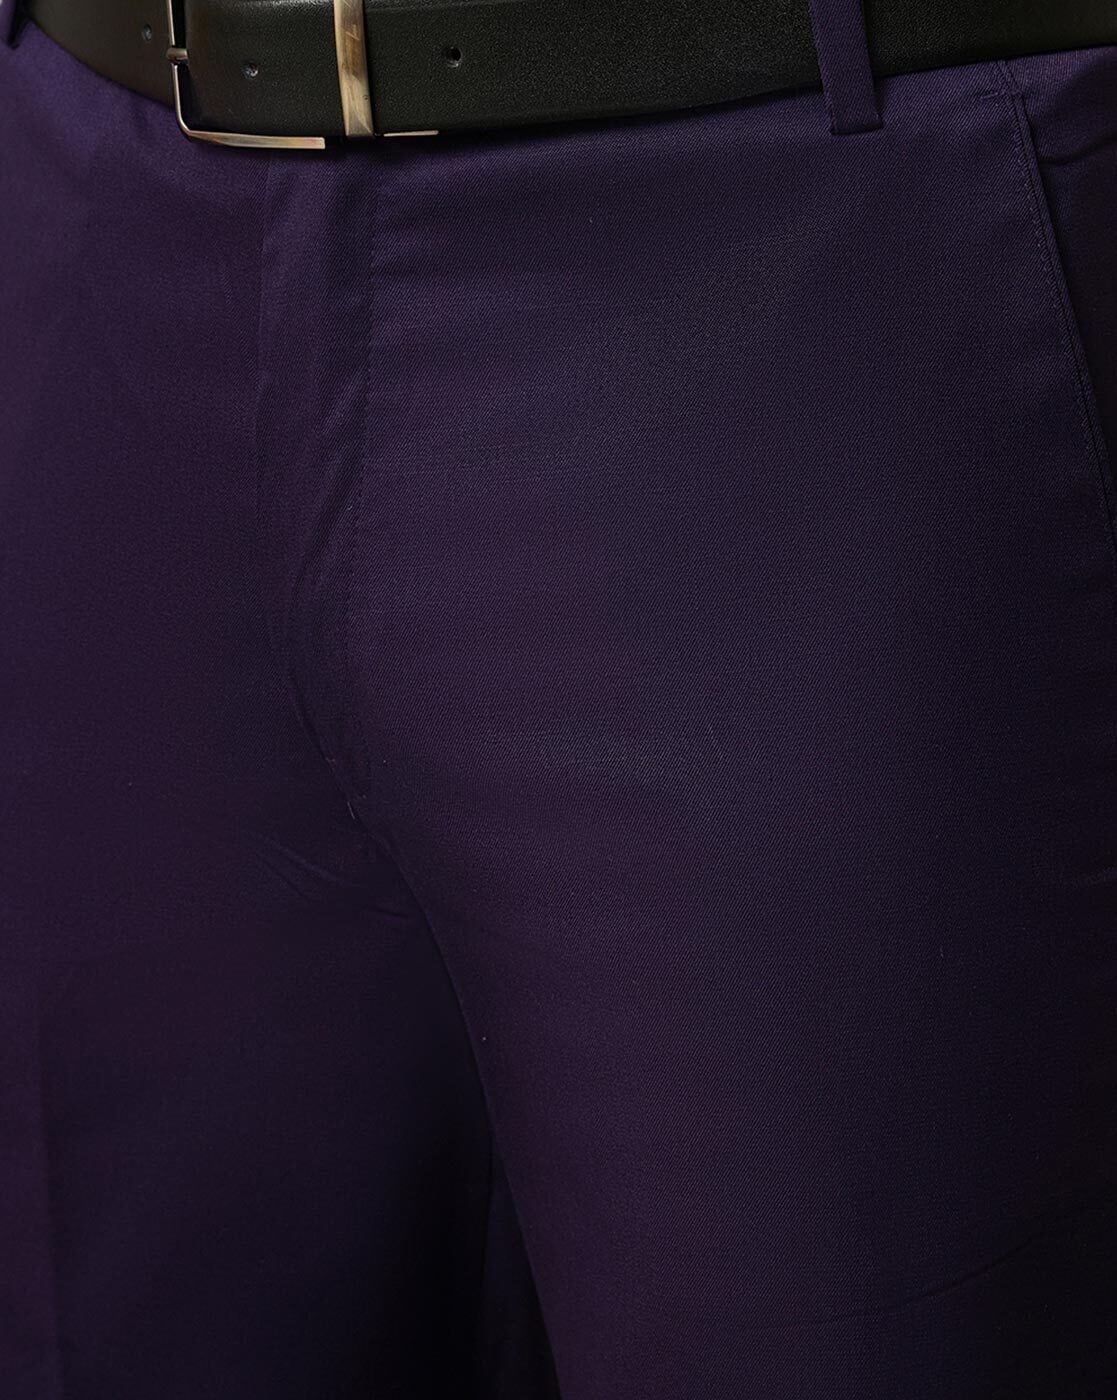 Flirtitude Purple Active Pants Size XL - 42% off